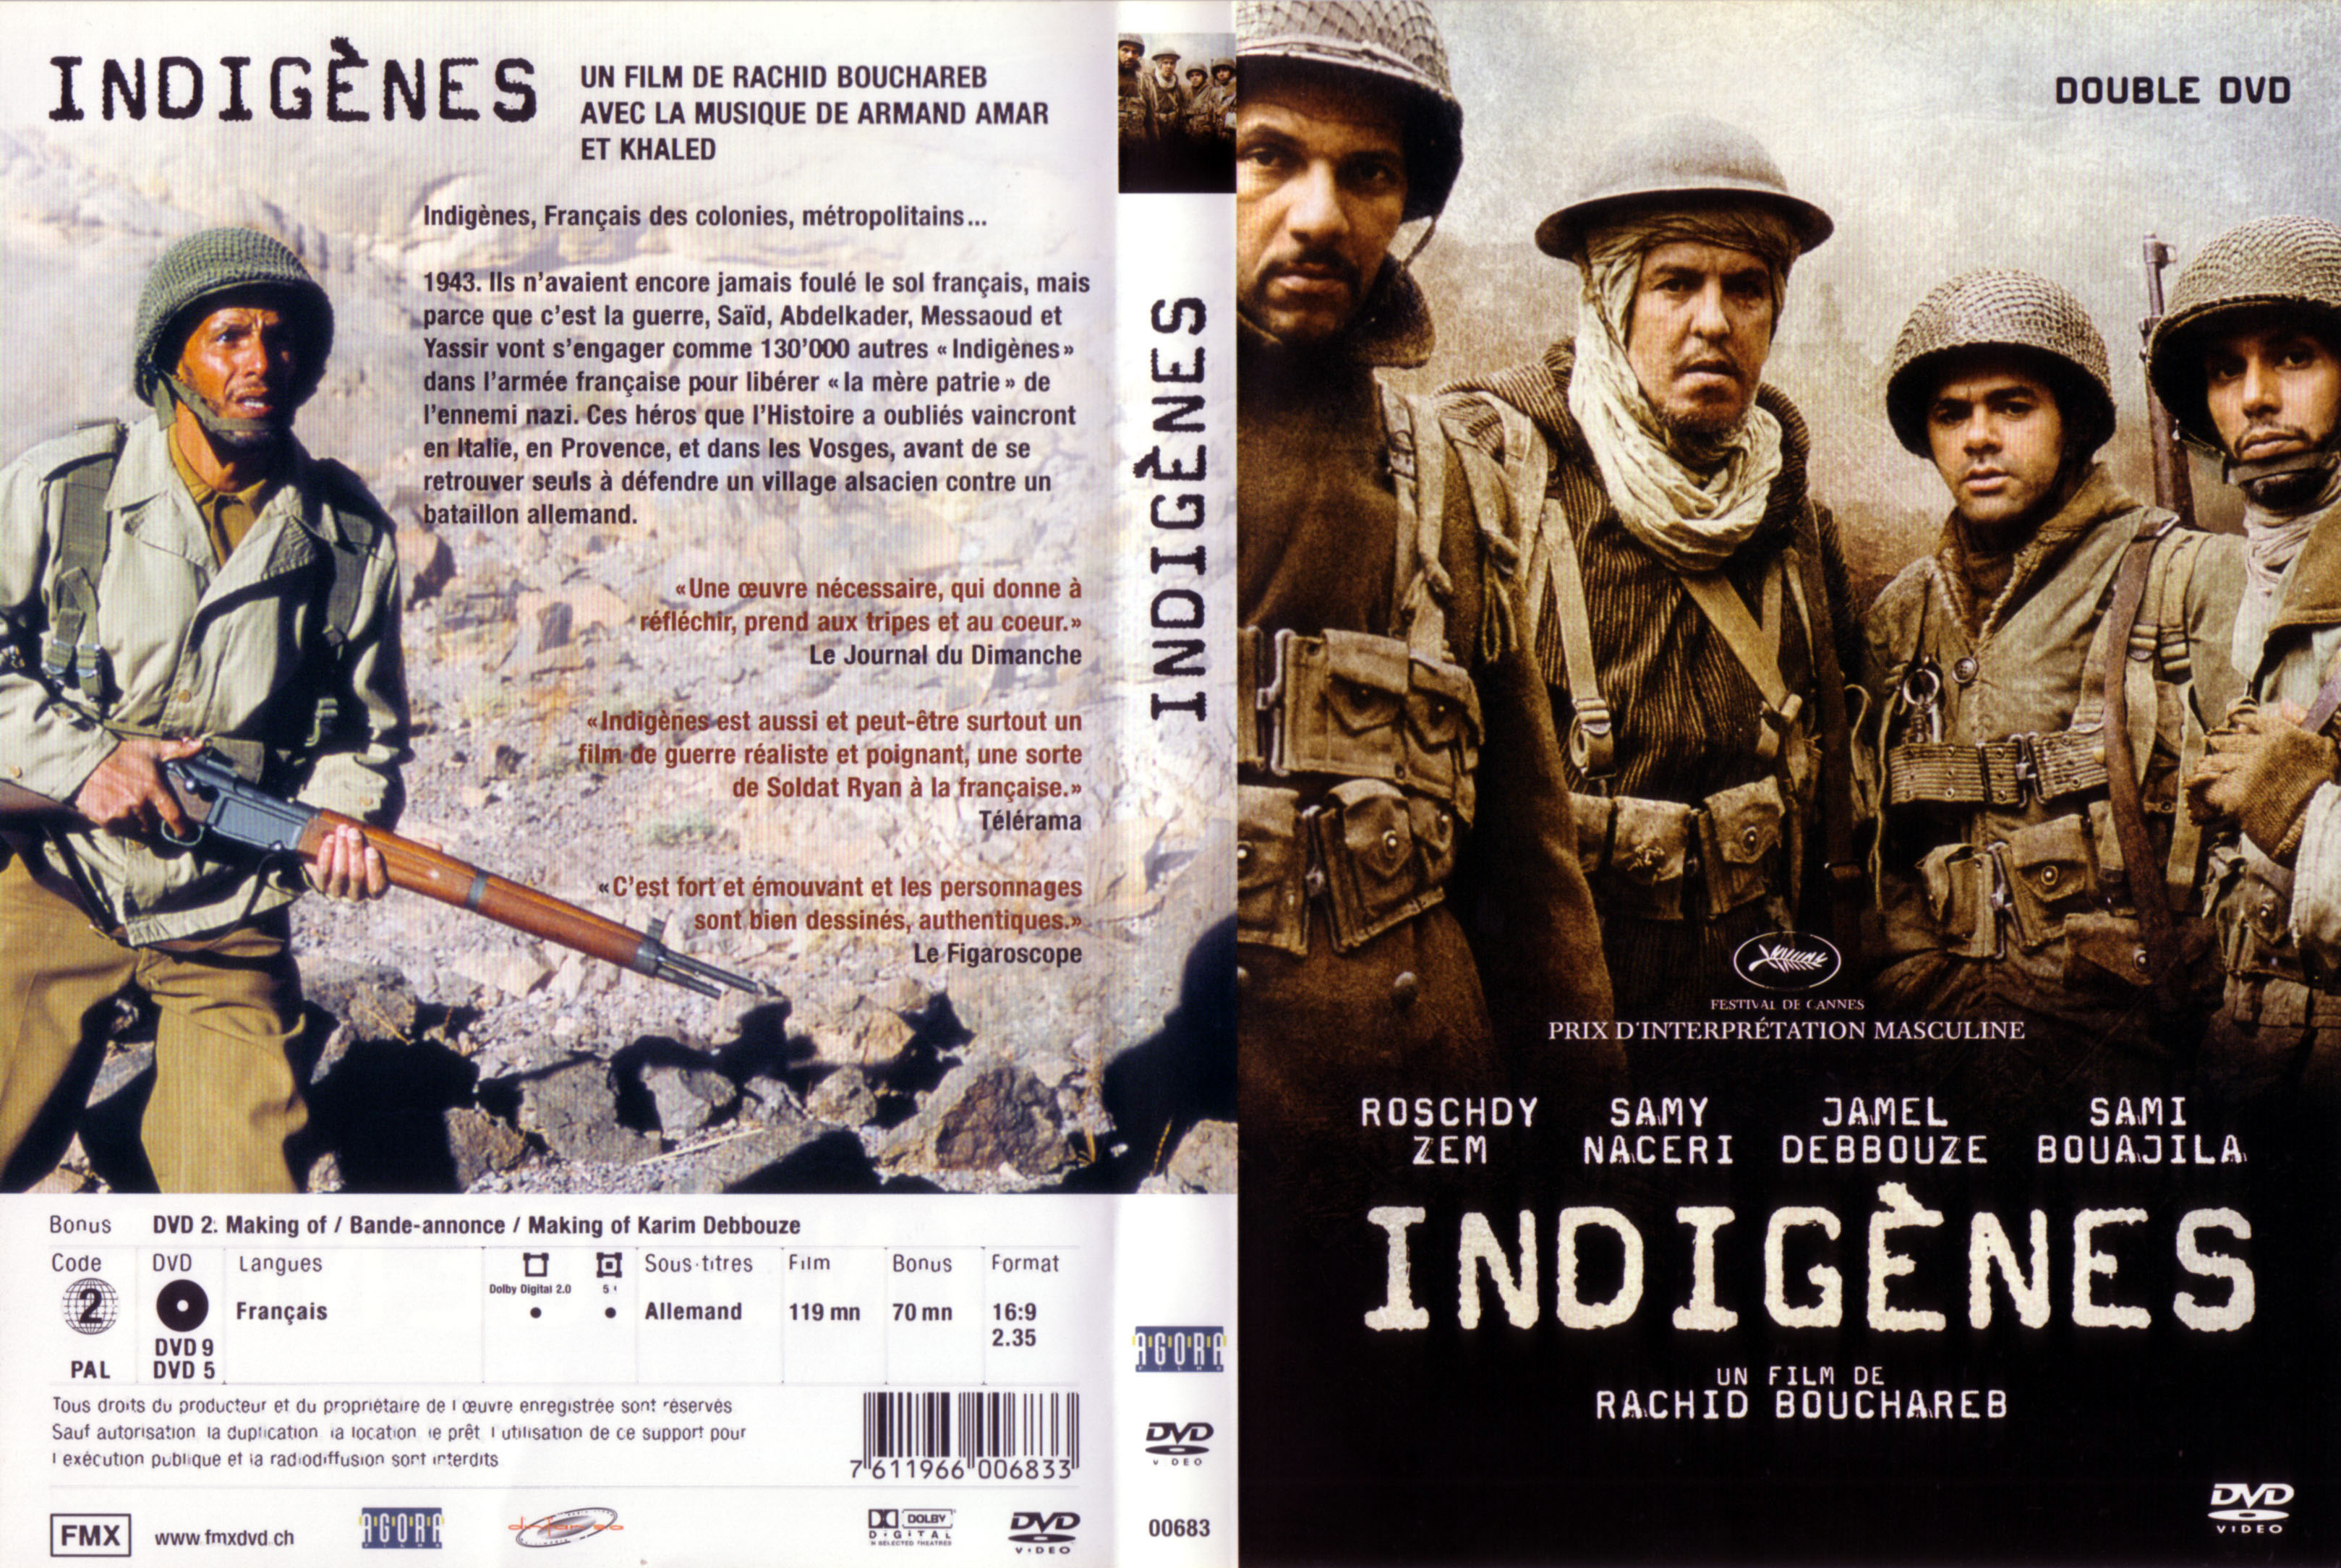 Jaquette DVD Indignes v5